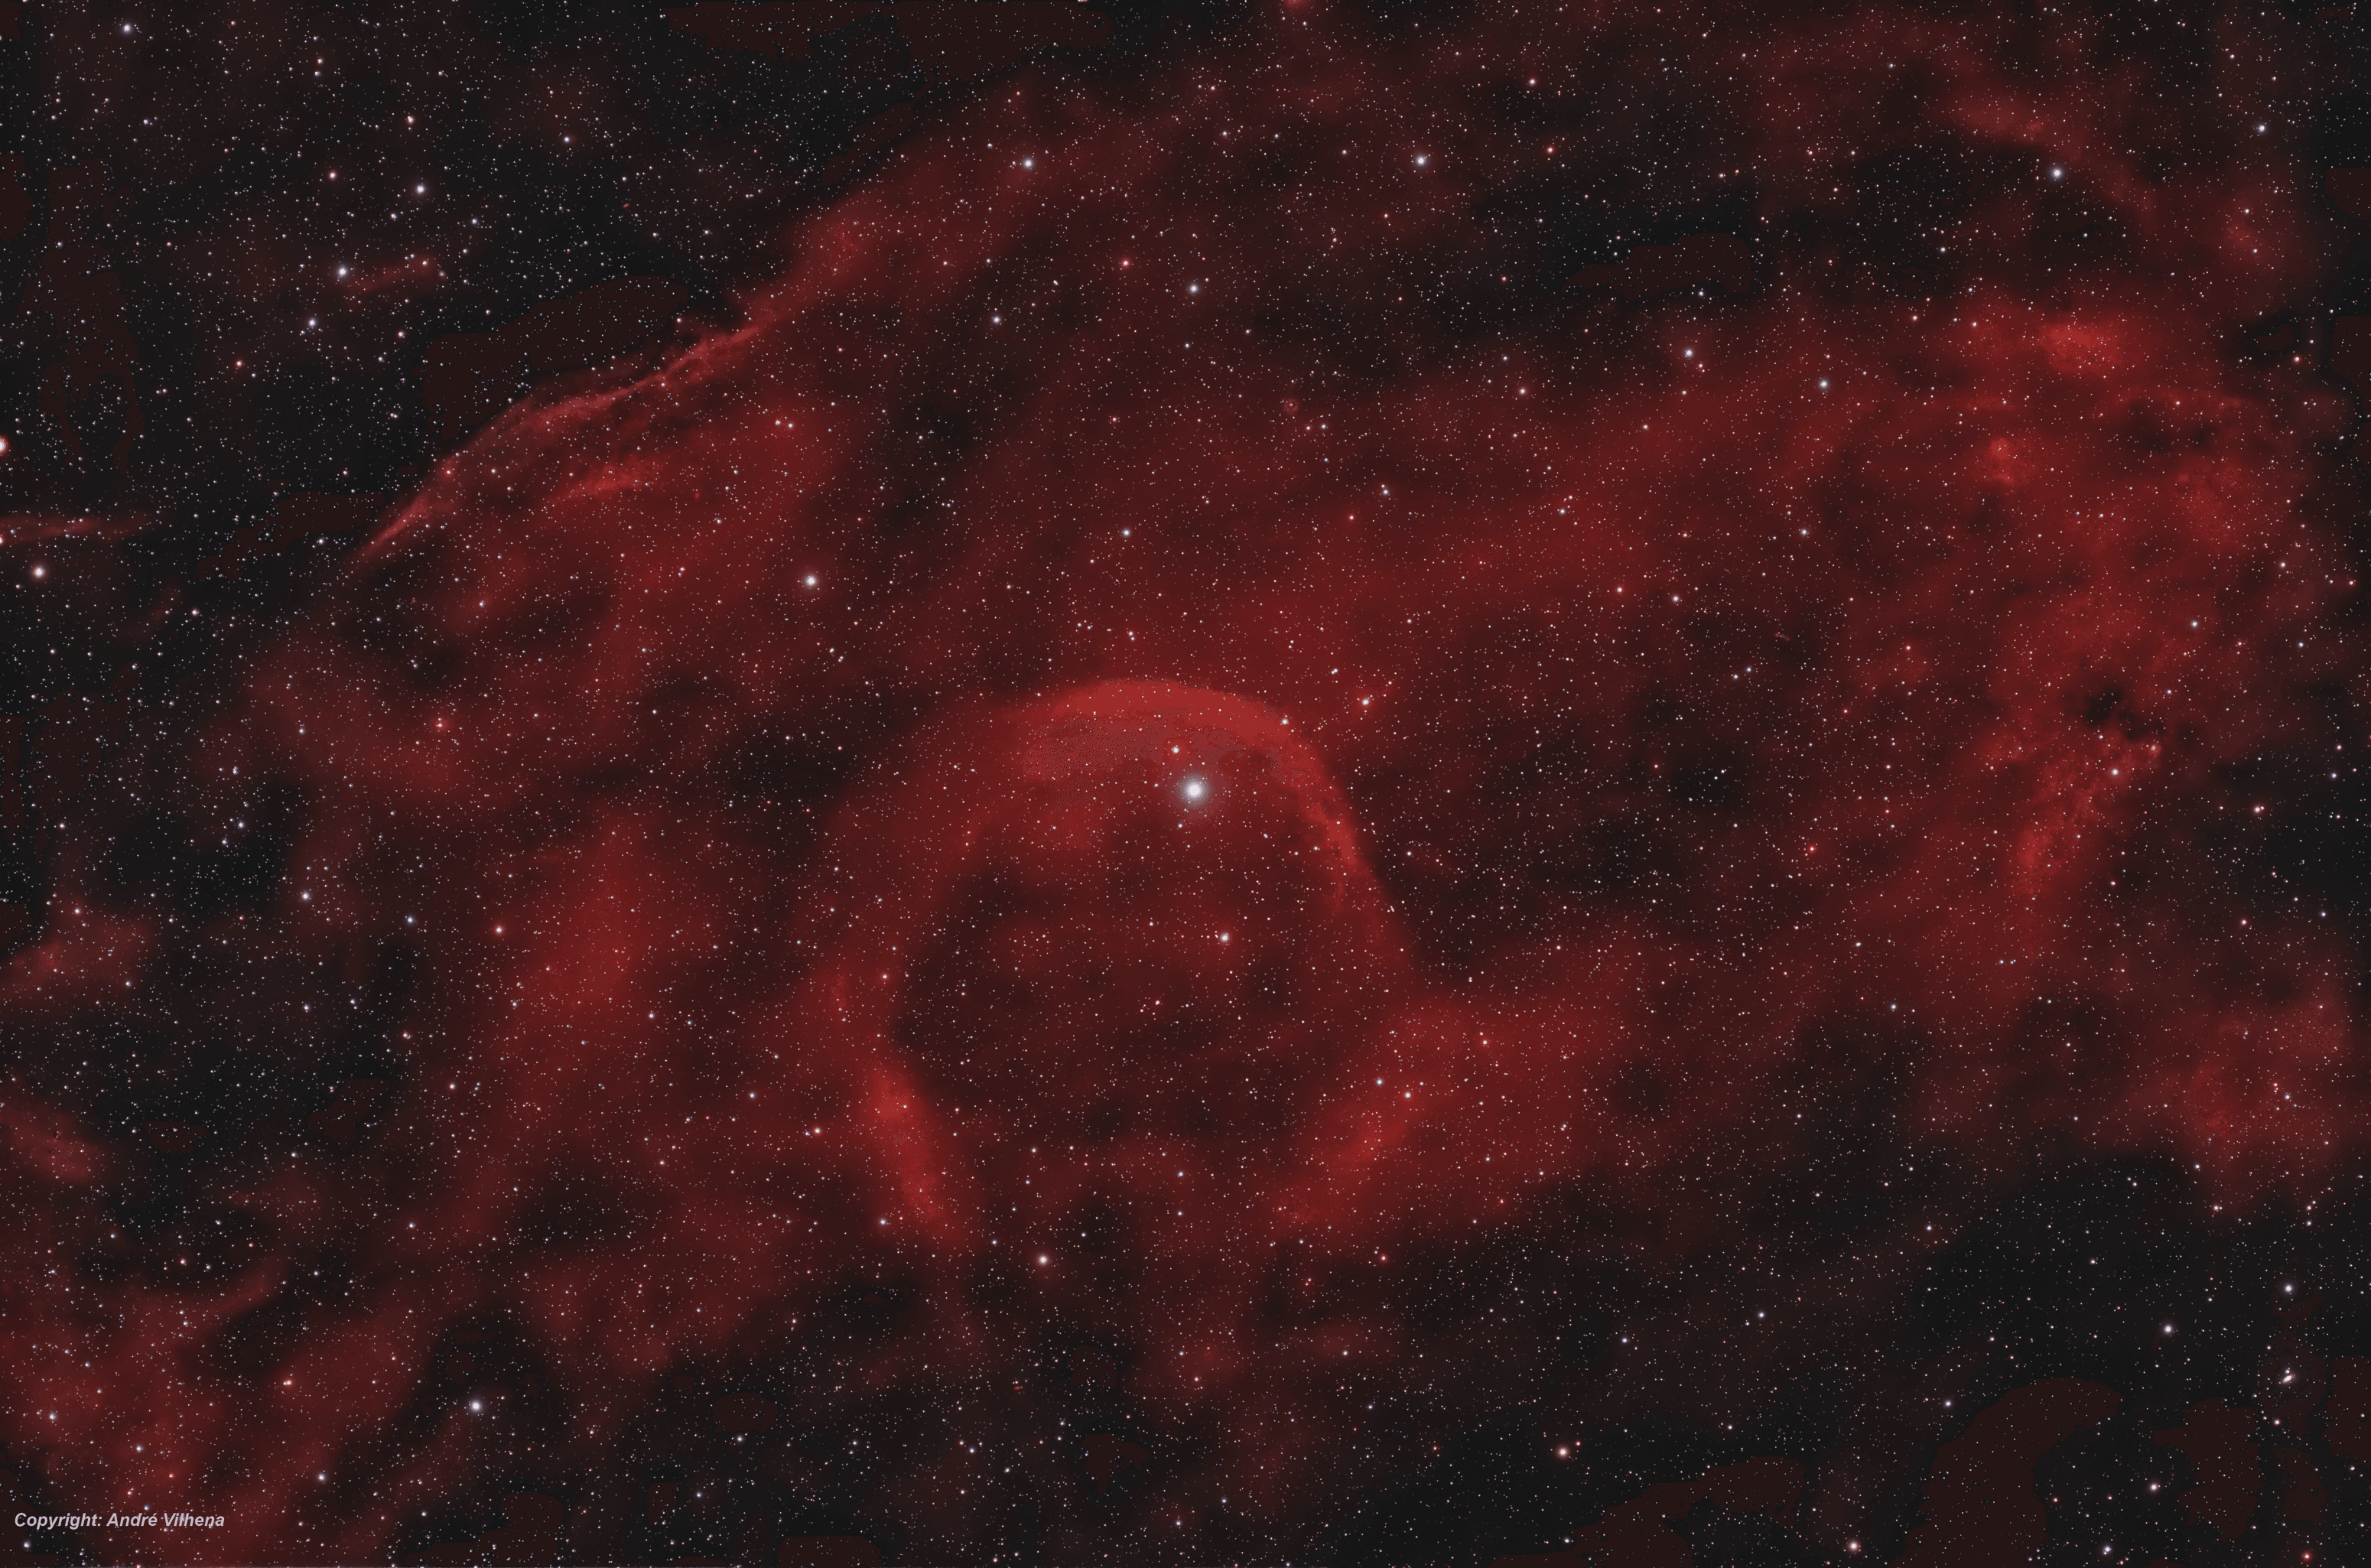 امتداد من الأغبرة الكونيّة التي تظهر بلون محمرّ يتوسّطها نجمٌ ساطع بارز، مع تناثر نجوم متفاوتة عبر الصورة